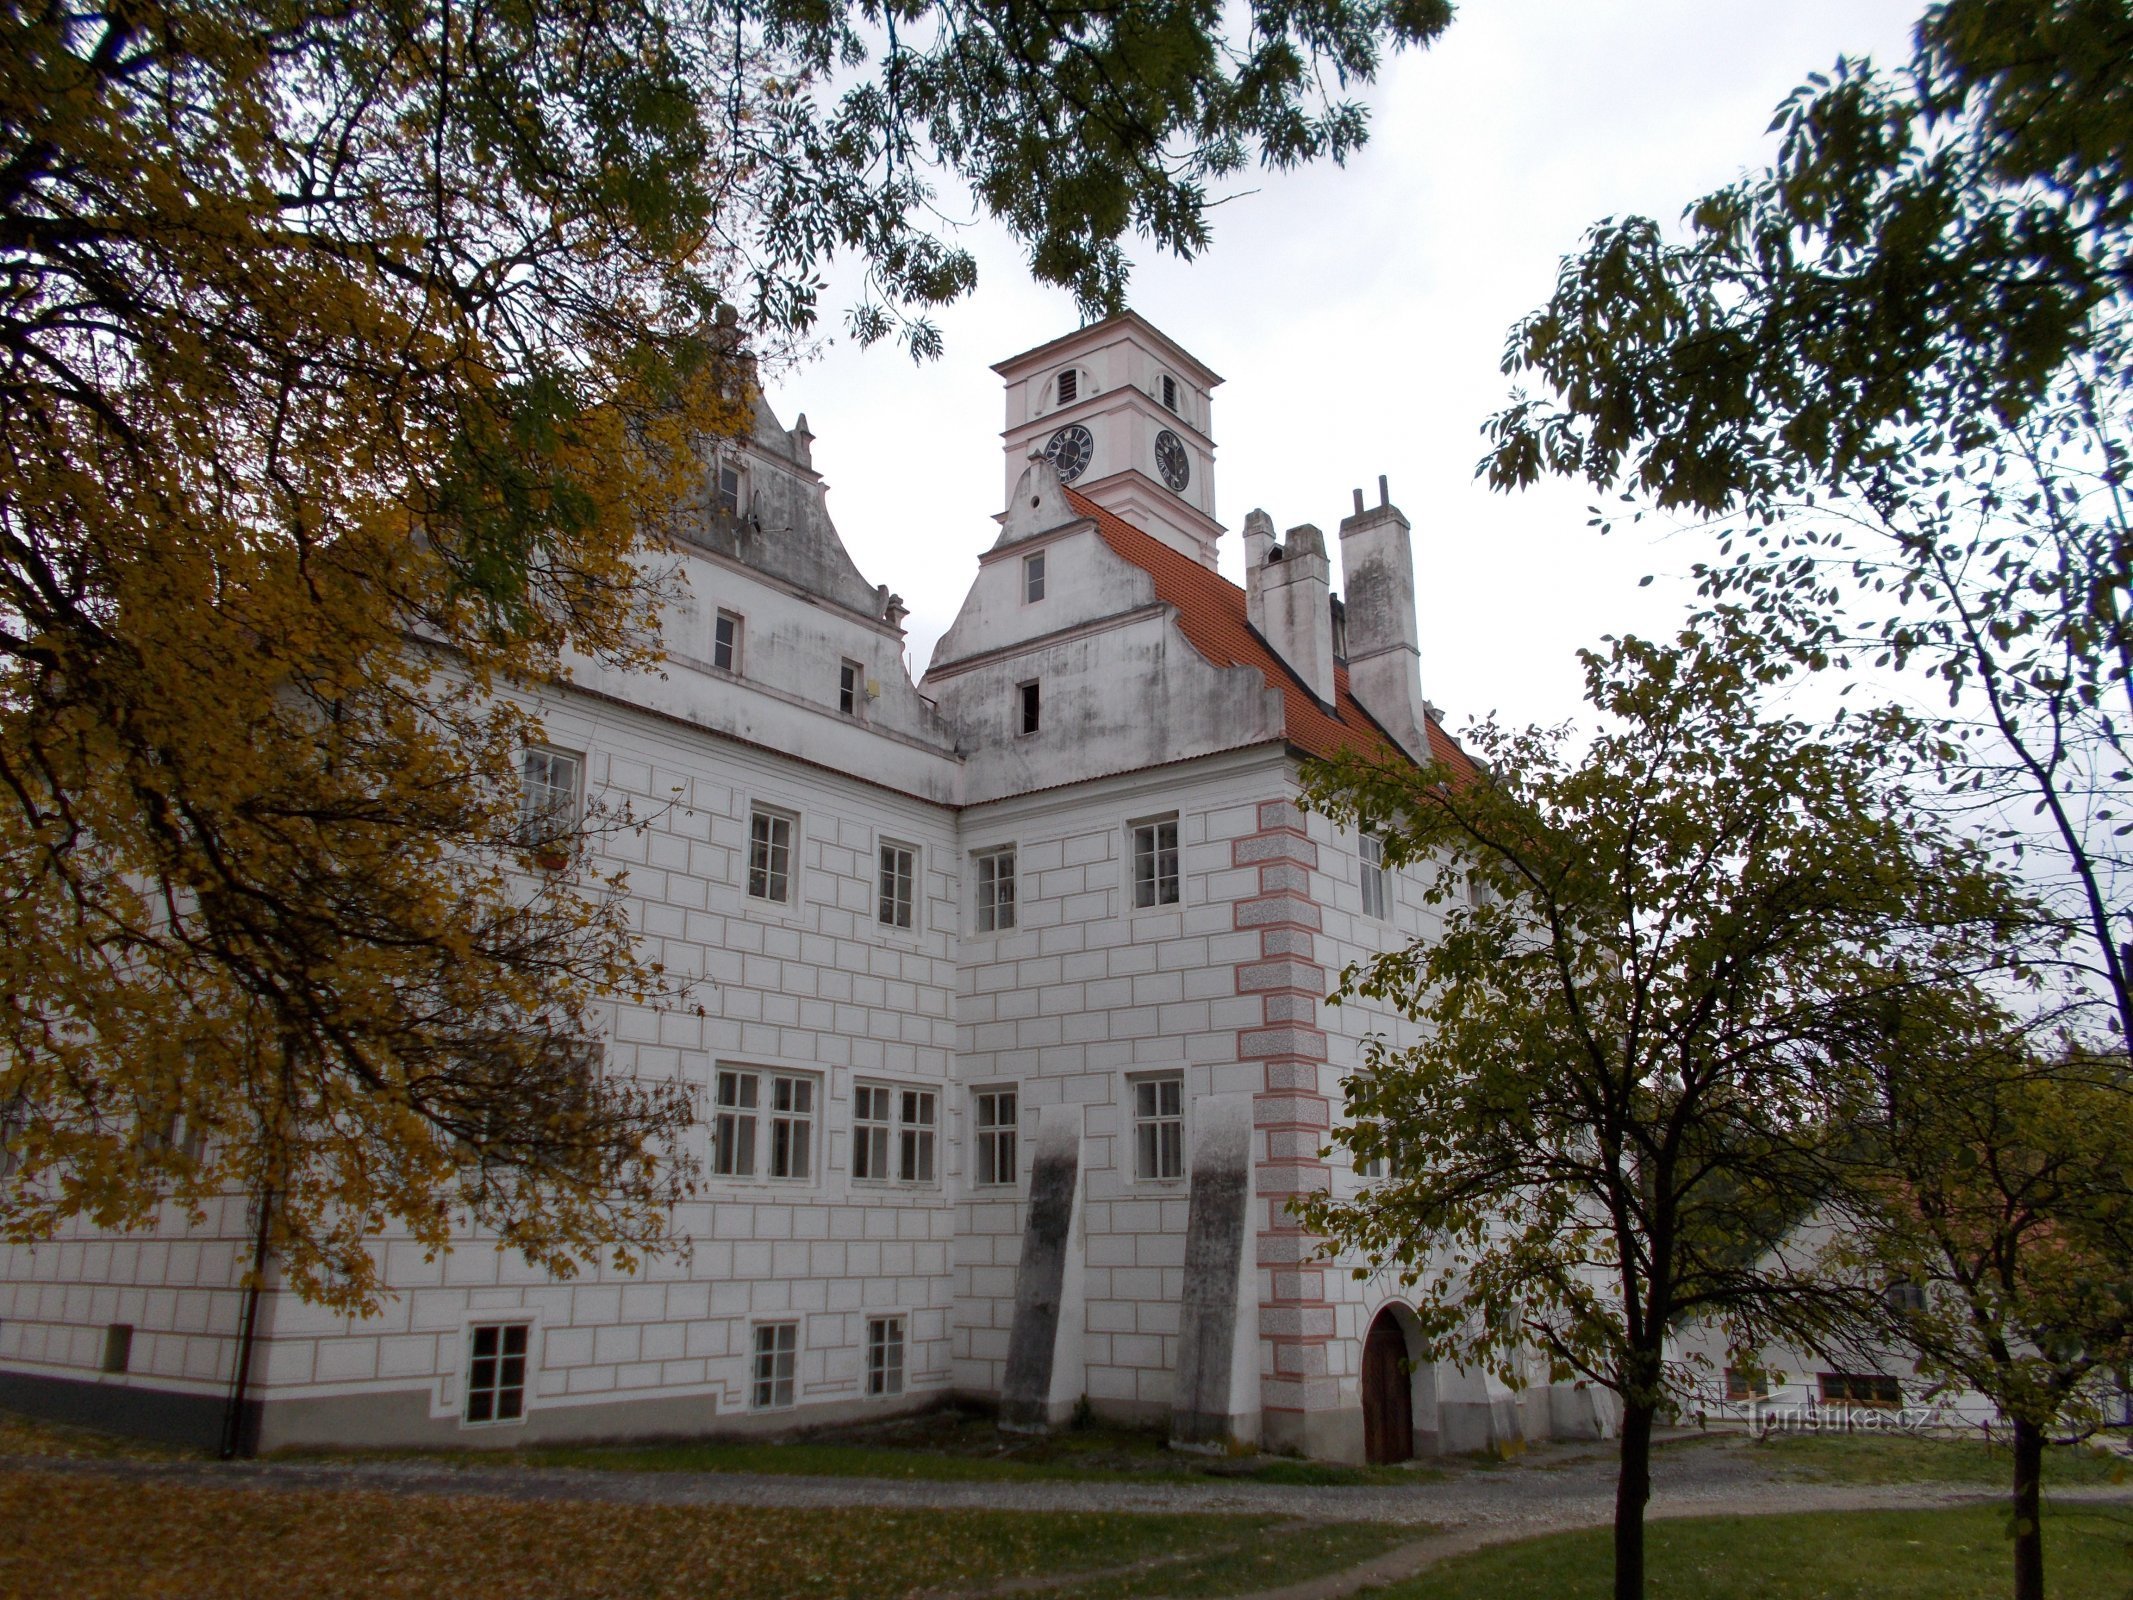 Dvorac Žichovice